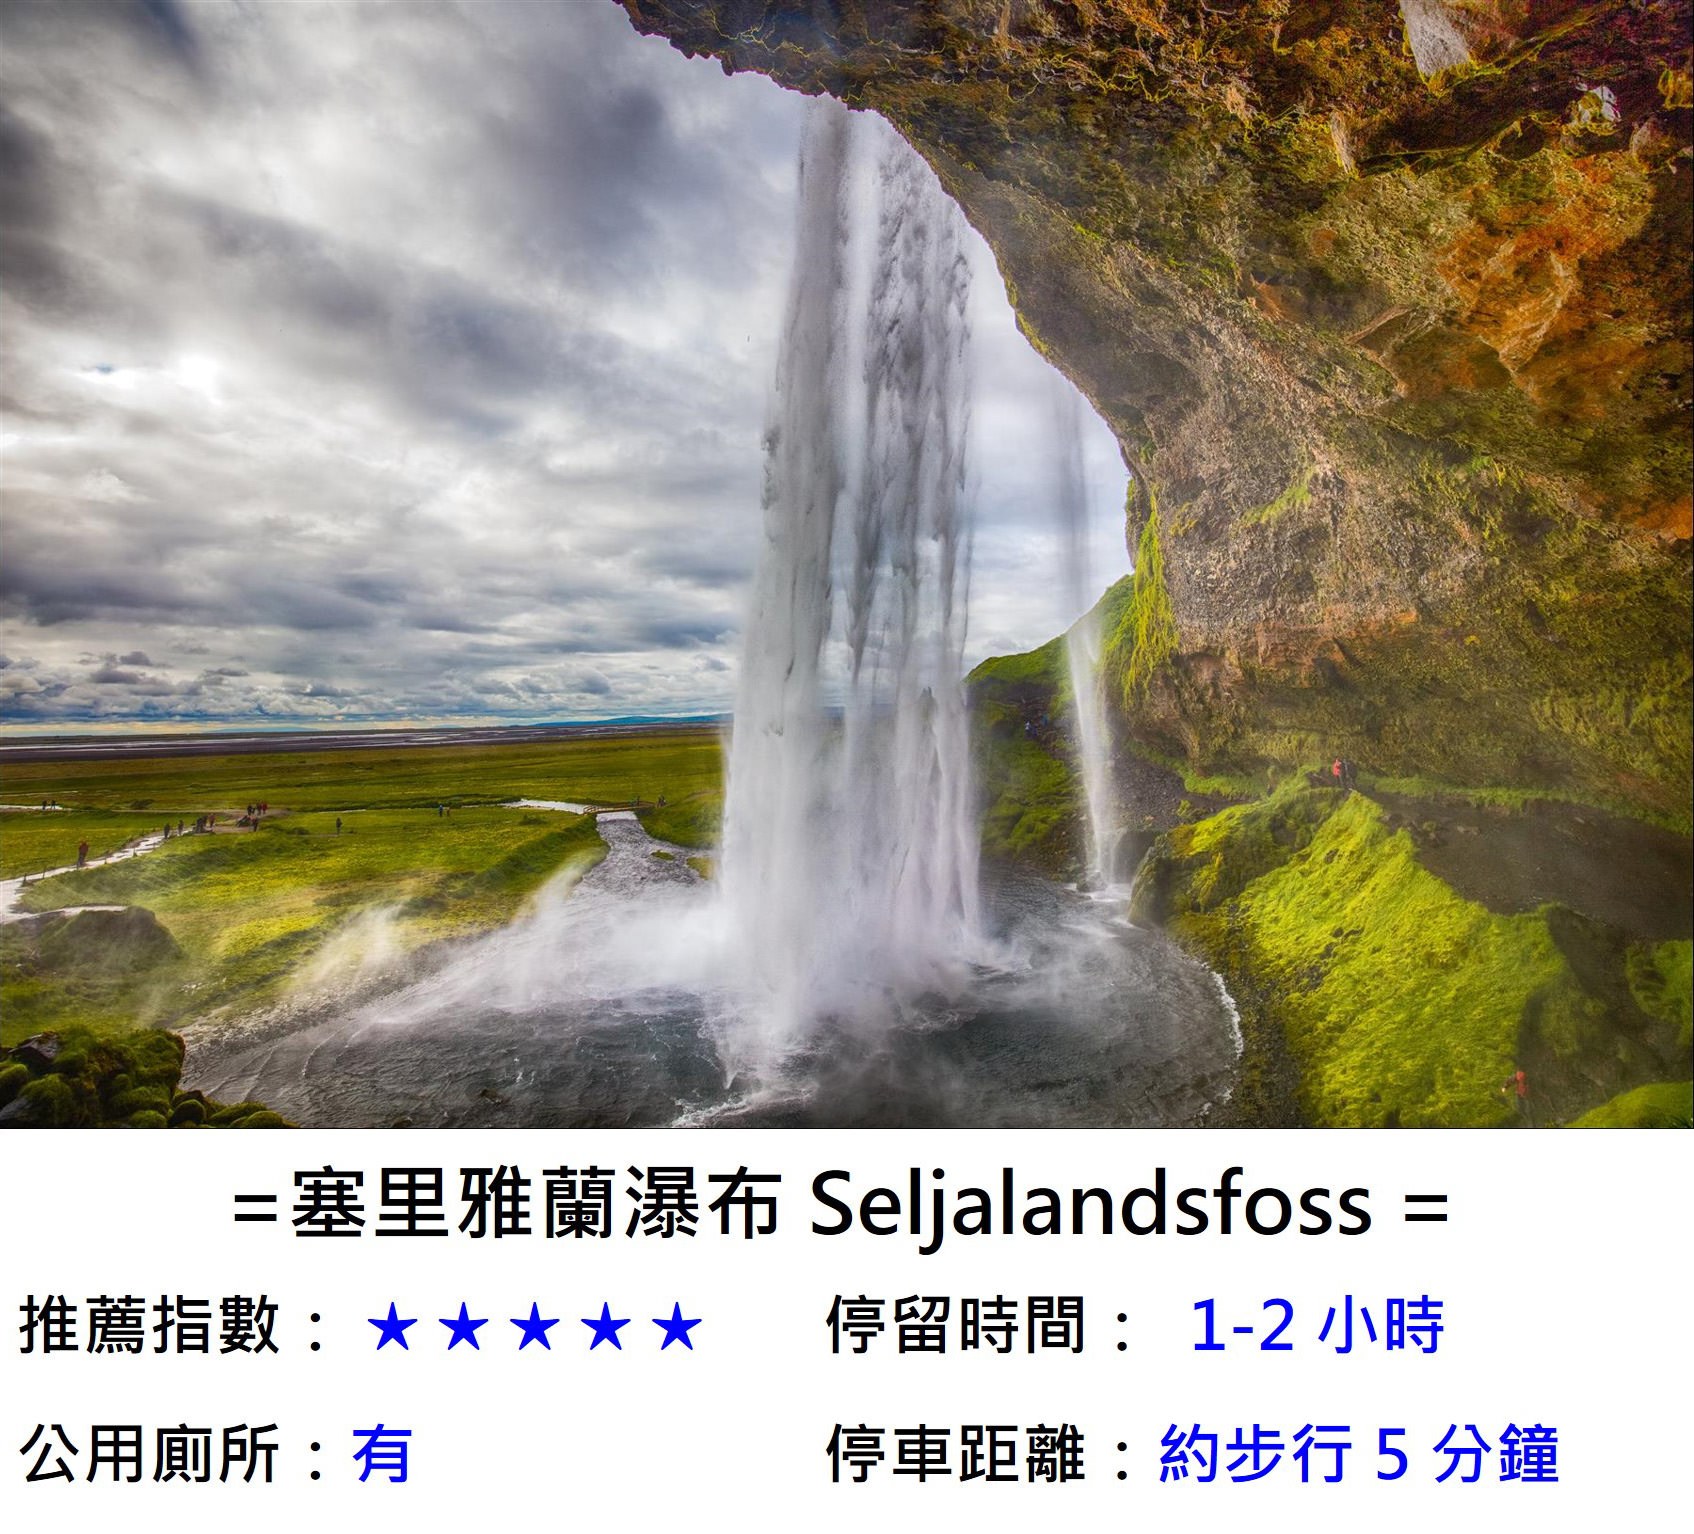 [冰島/規畫] 冰島 5 天 4 夜行程規劃 , 金圈、南部二大瀑布、冰川健行、傑古沙龍冰河湖